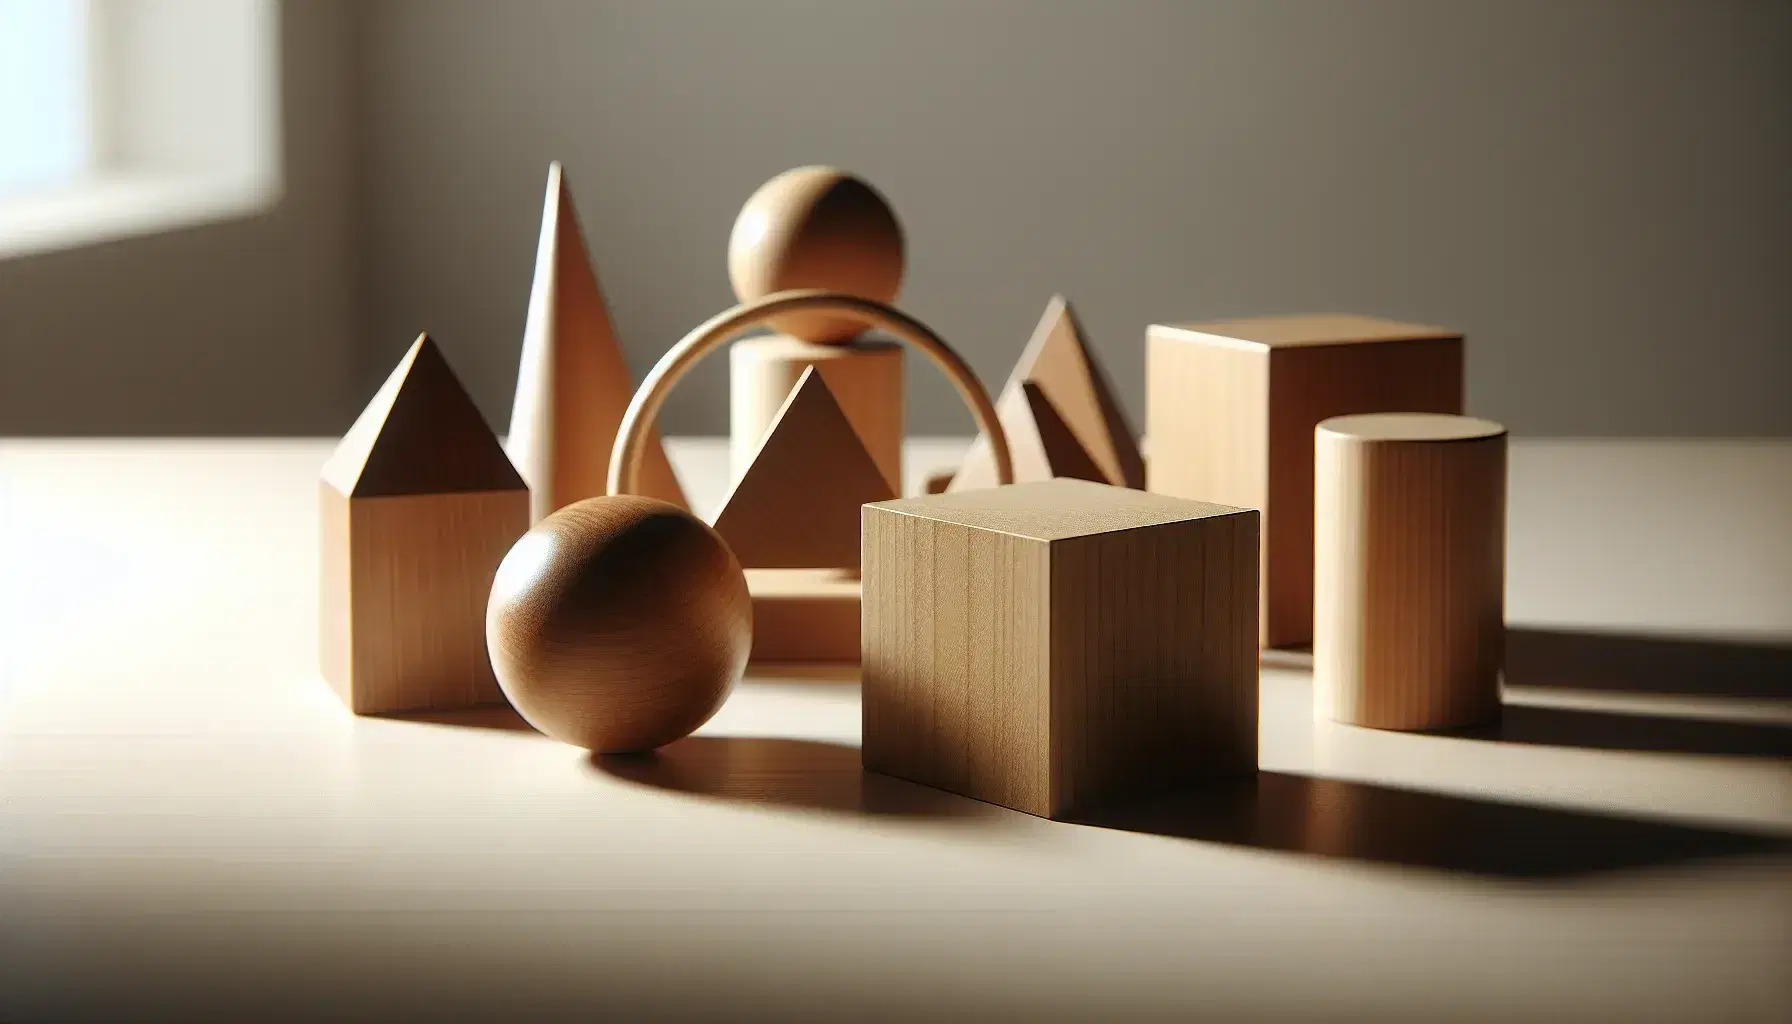 Conjunto de figuras geométricas de madera sobre mesa clara, incluyendo un cubo, esfera, cilindro, prisma triangular y cono, con sombras suaves y fondo neutro.